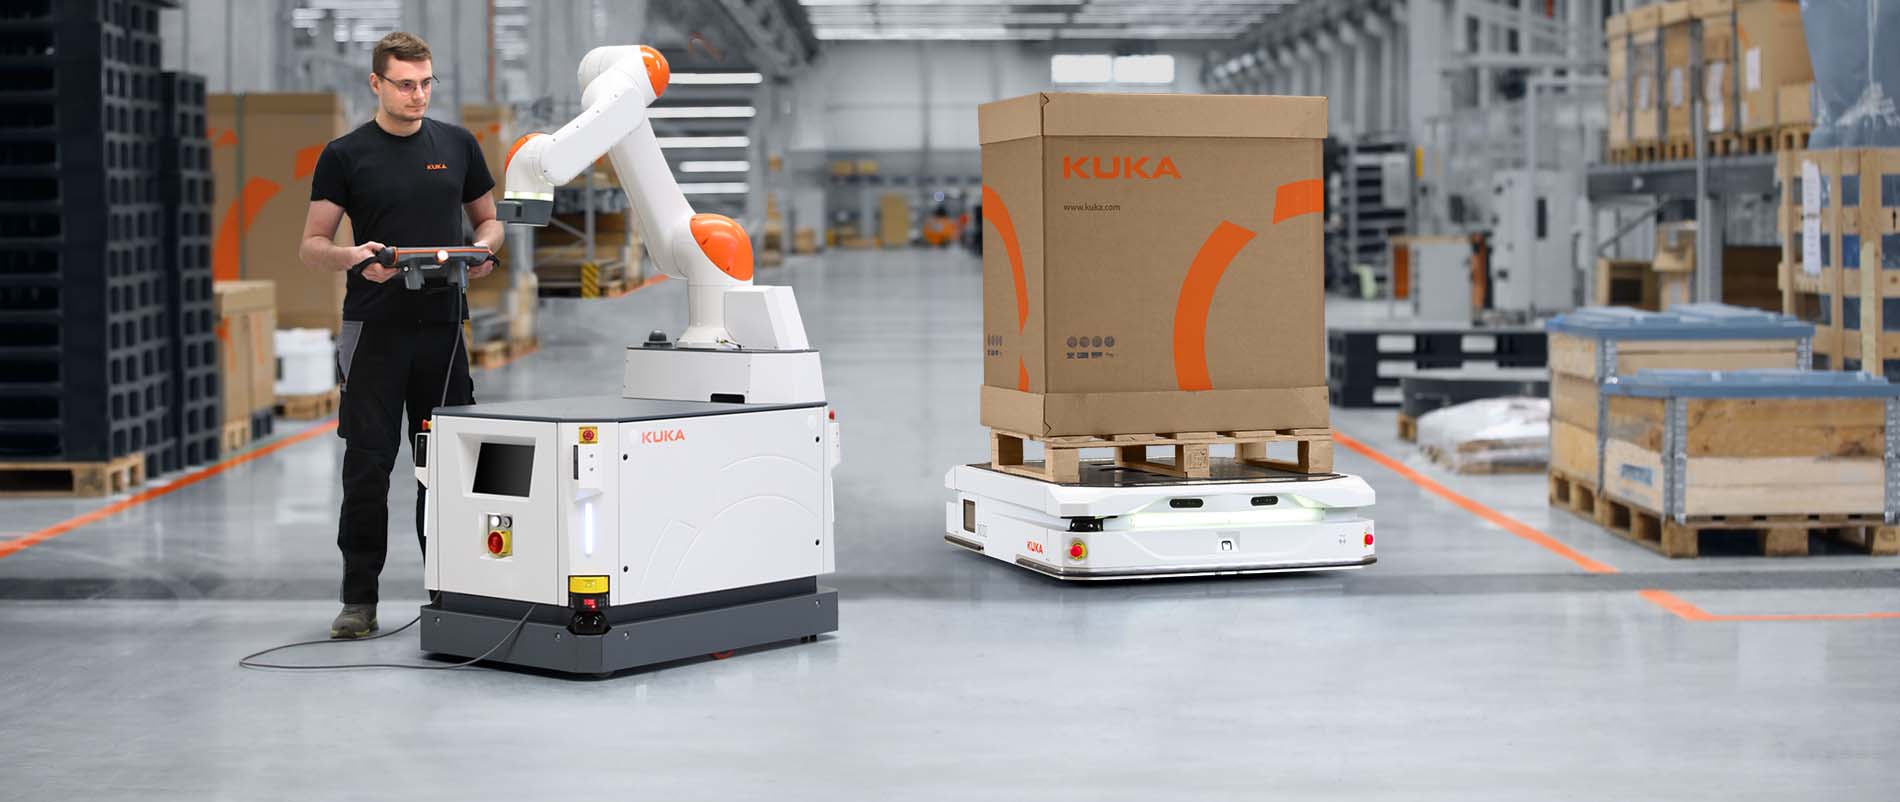 Autonome mobile Roboter erfüllen die Anforderungen der Intralogistik und Produktion. 